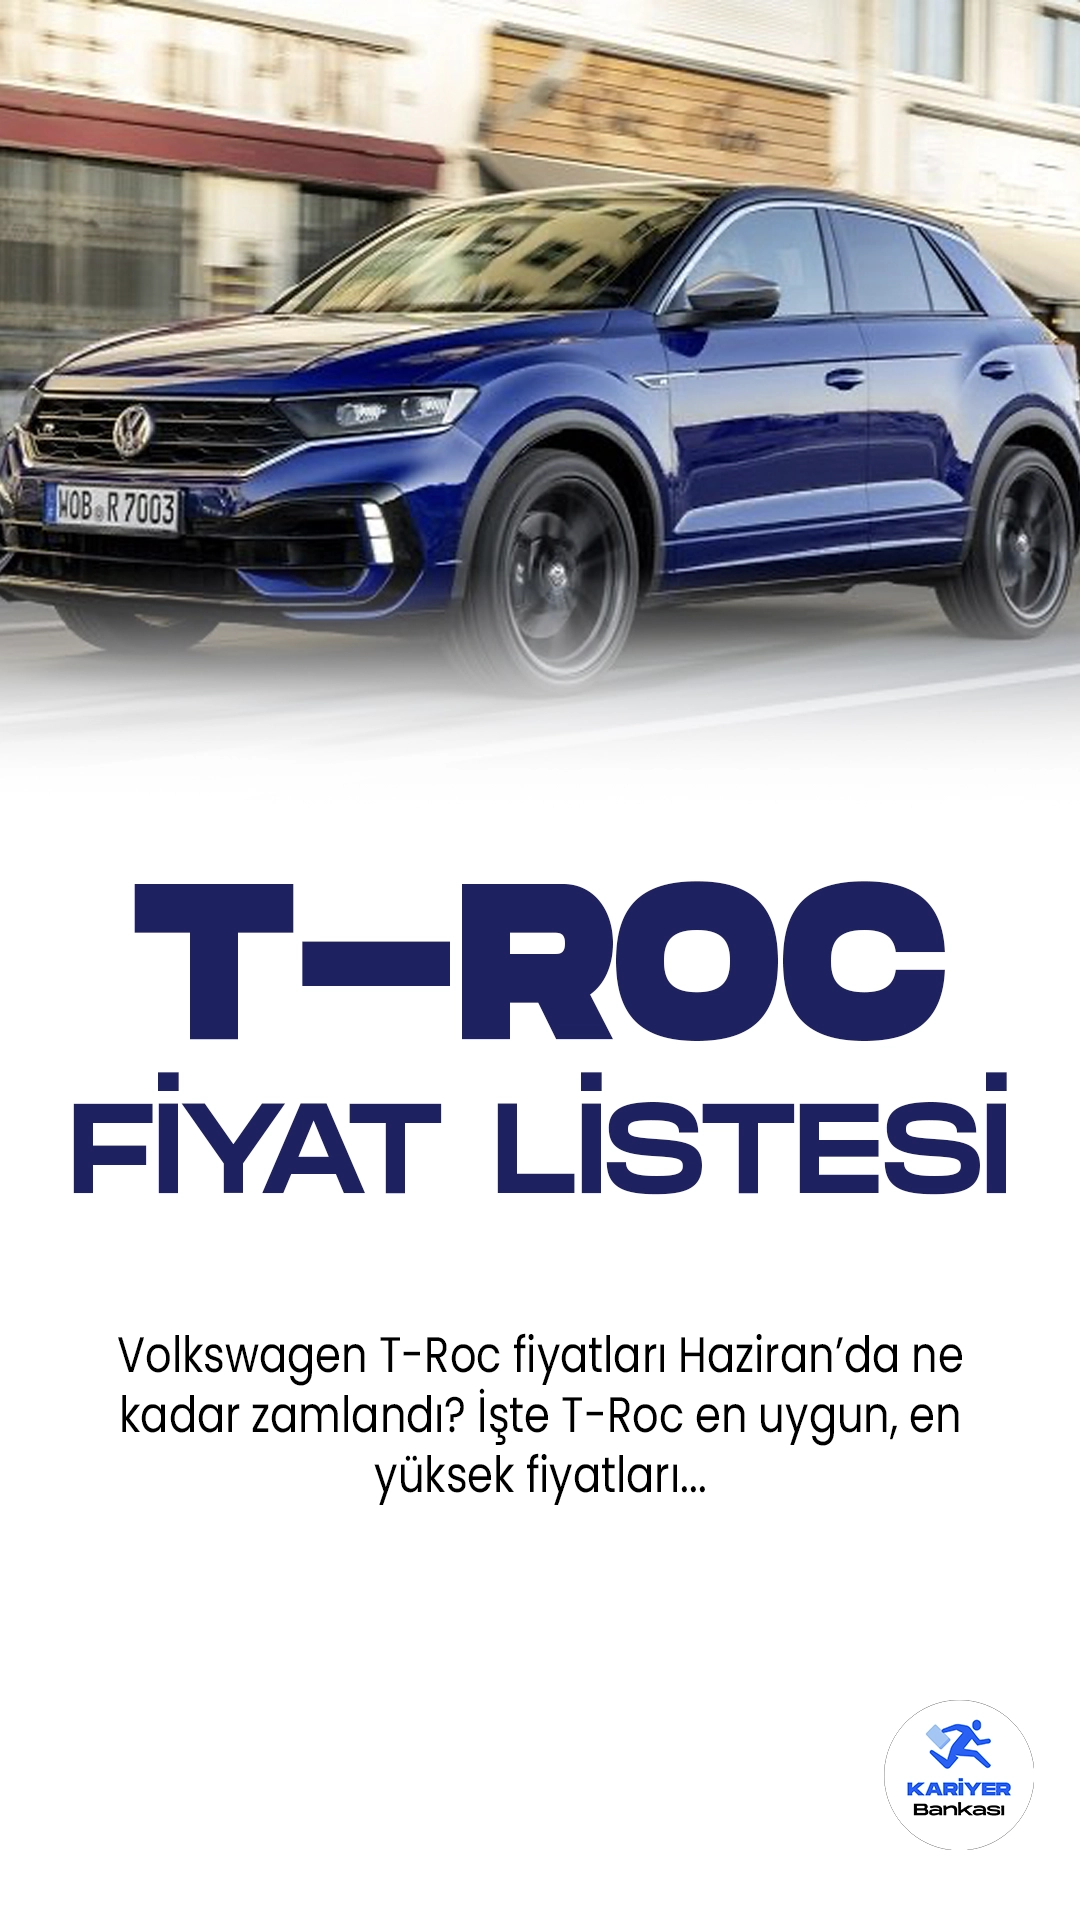 Volkswagen T-Roc Haziran 2023 Fiyat Listesi.Volkswagen, heyecan verici yeni modeli T-Roc'u tanıttı. T-Roc, şık tasarımı ve üstün performansıyla dikkat çekiyor. Dinamik hatları ve agresif ön ızgarasıyla sportif bir duruş sergiliyor. Aracın iç mekanı da özenle tasarlanmış, modern bir görünüme sahip. Geniş iç hacmi ve yüksek konfor seviyesi sürücü ve yolculara keyifli bir deneyim sunuyor. T-Roc, güçlü motor seçenekleriyle performans odaklı sürüşler için ideal bir seçenek sunuyor. Ayrıca, gelişmiş güvenlik sistemleri ve son teknoloji özellikleriyle donatılan T-Roc, sürüş güvenliği ve konforunu maksimum düzeyde sağlıyor. Volkswagen T-Roc, otomobil tutkunları için heyecan verici bir seçenek olarak öne çıkıyor.